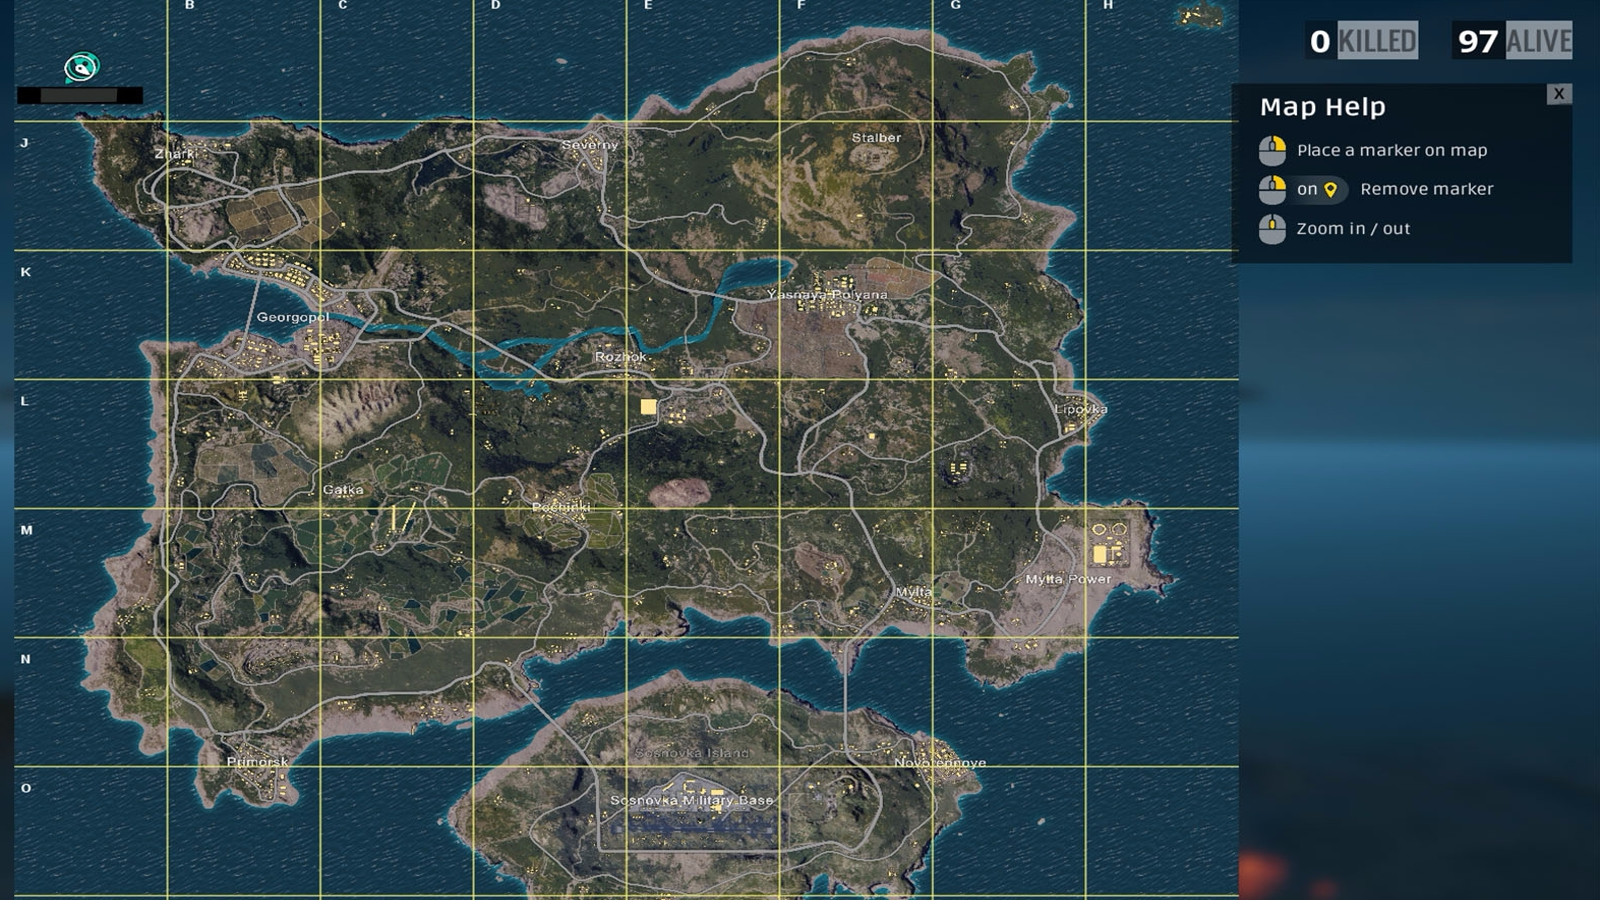 Mapa da Área Vip Legendado (Versão atual 13.05) - Dentro do jogo